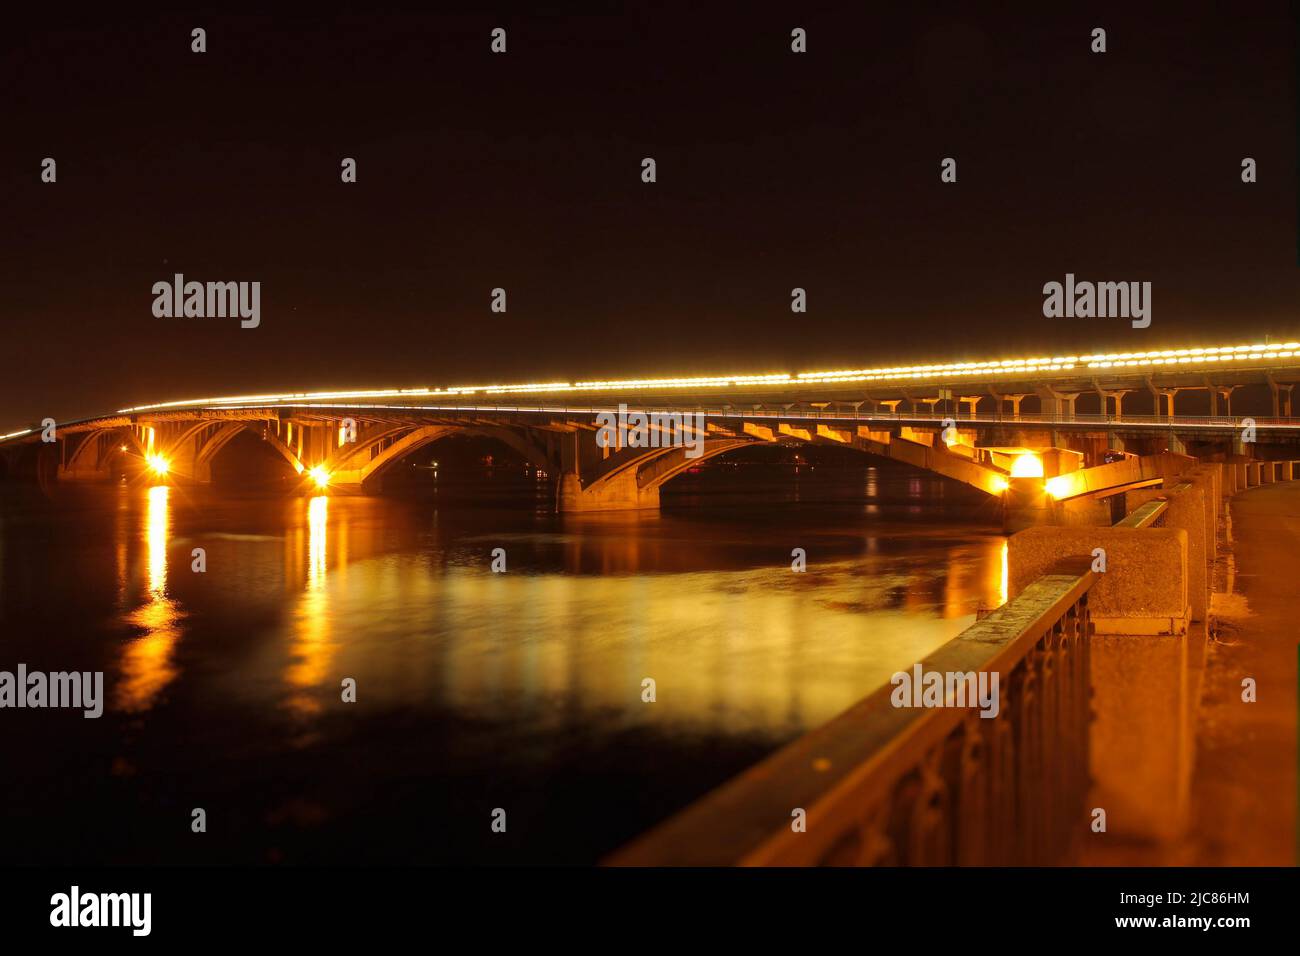 Las luces de la calle en el puente se reflejan en el río por la noche Foto de stock